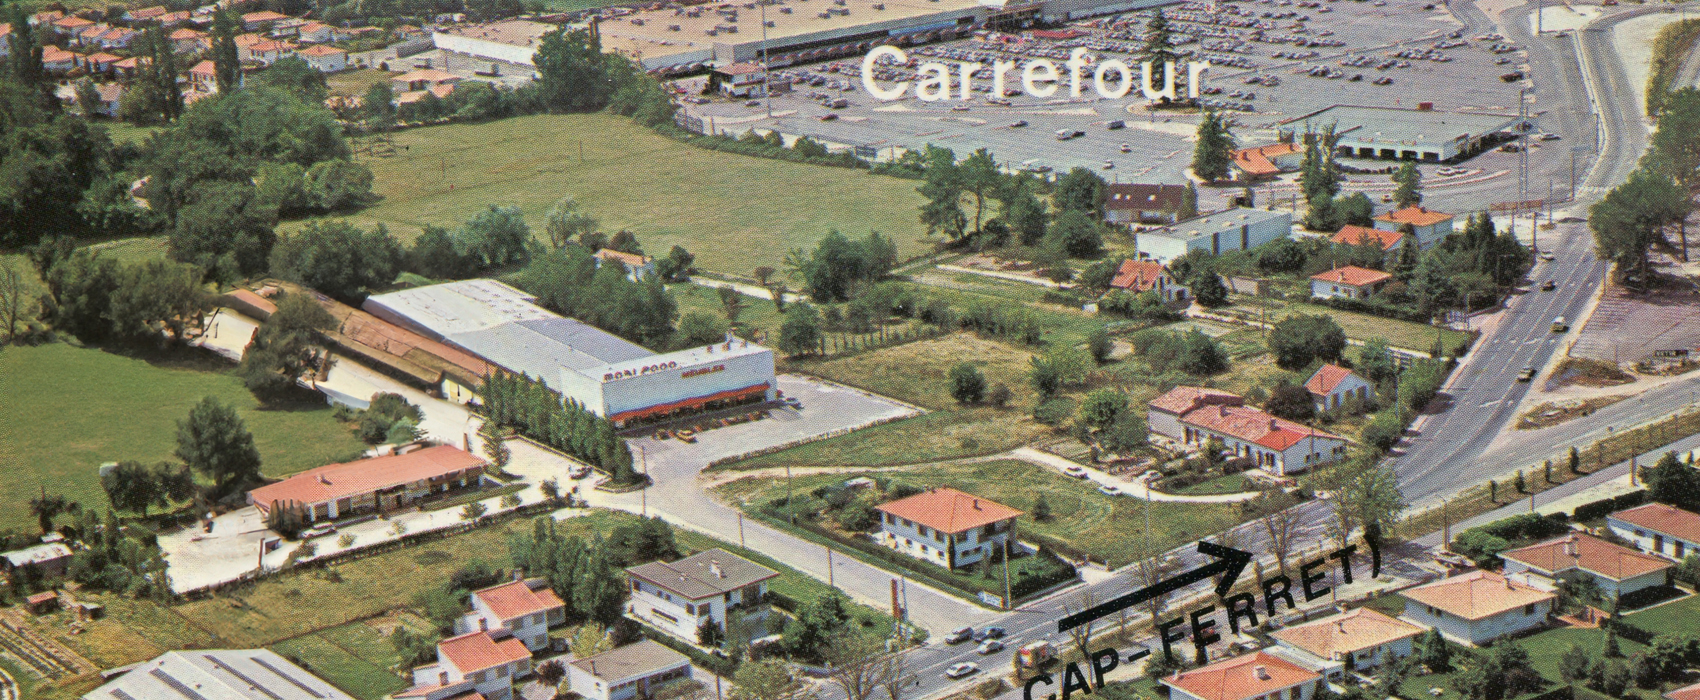 L’hypermarché Carrefour à la fin des années 1970